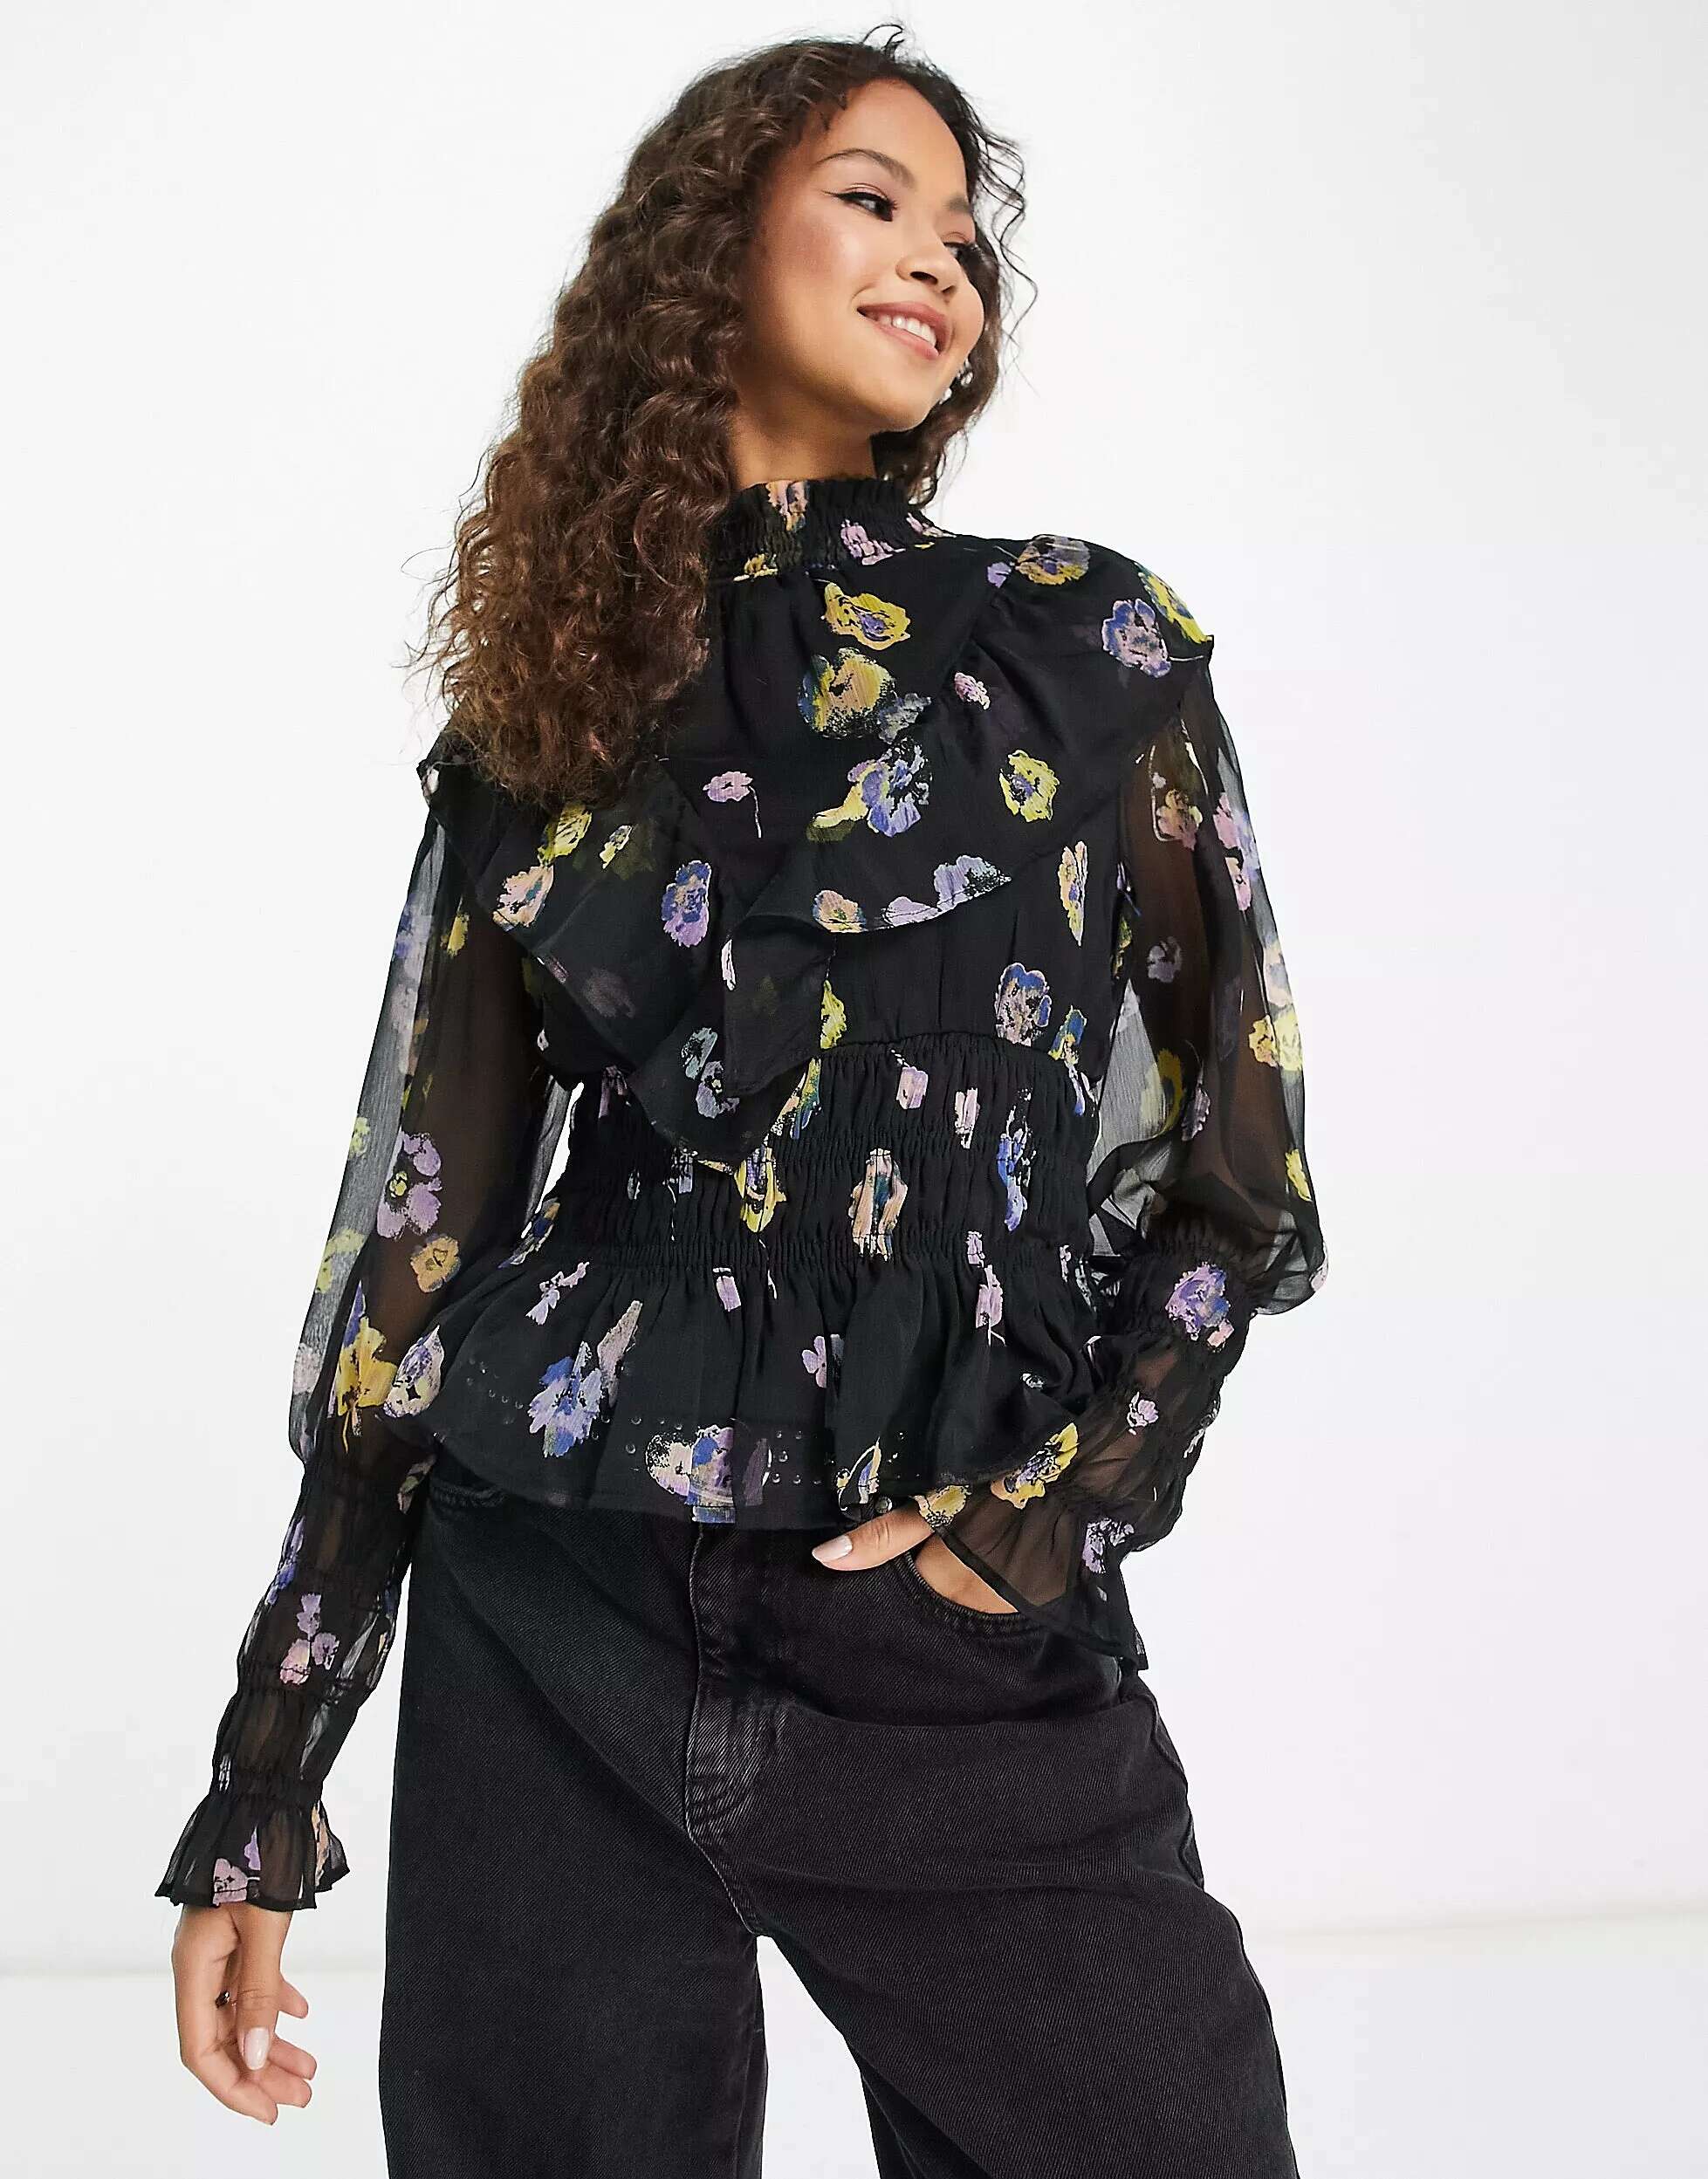 Блузка с присборками Vero Moda с цветочным принтом блузка с запахом vero moda с ярким цветочным принтом